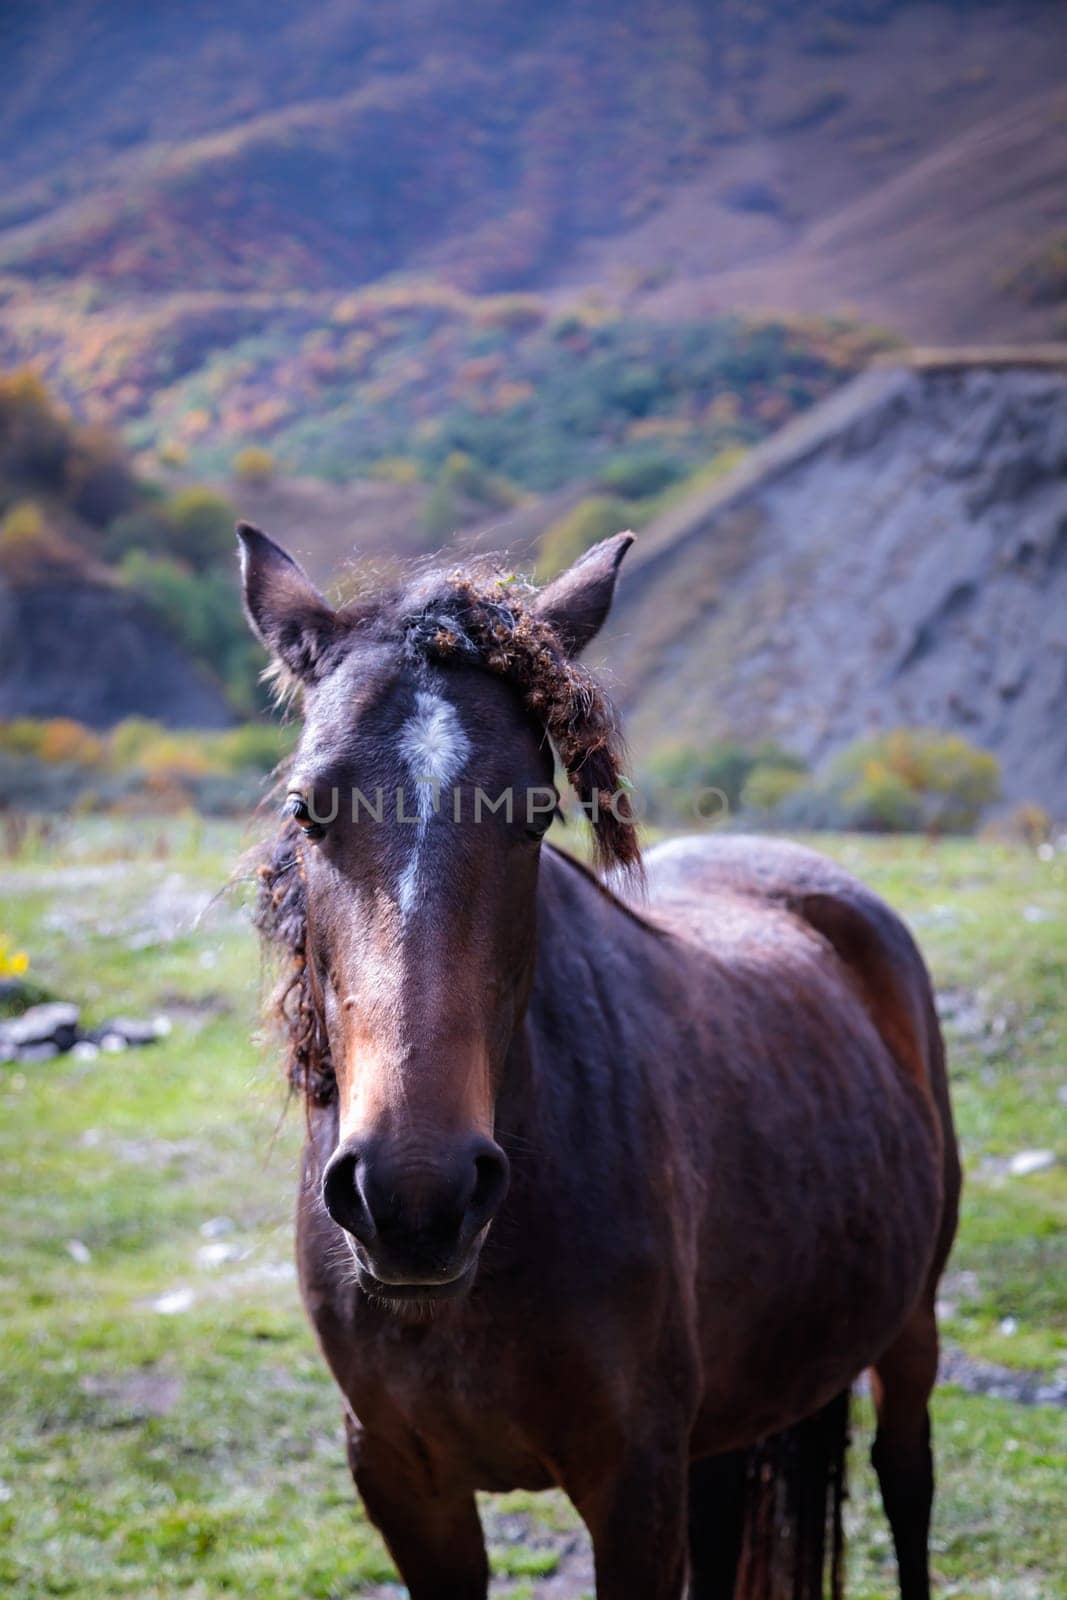 Majestic horse enjoying freedom in mountainous landscape